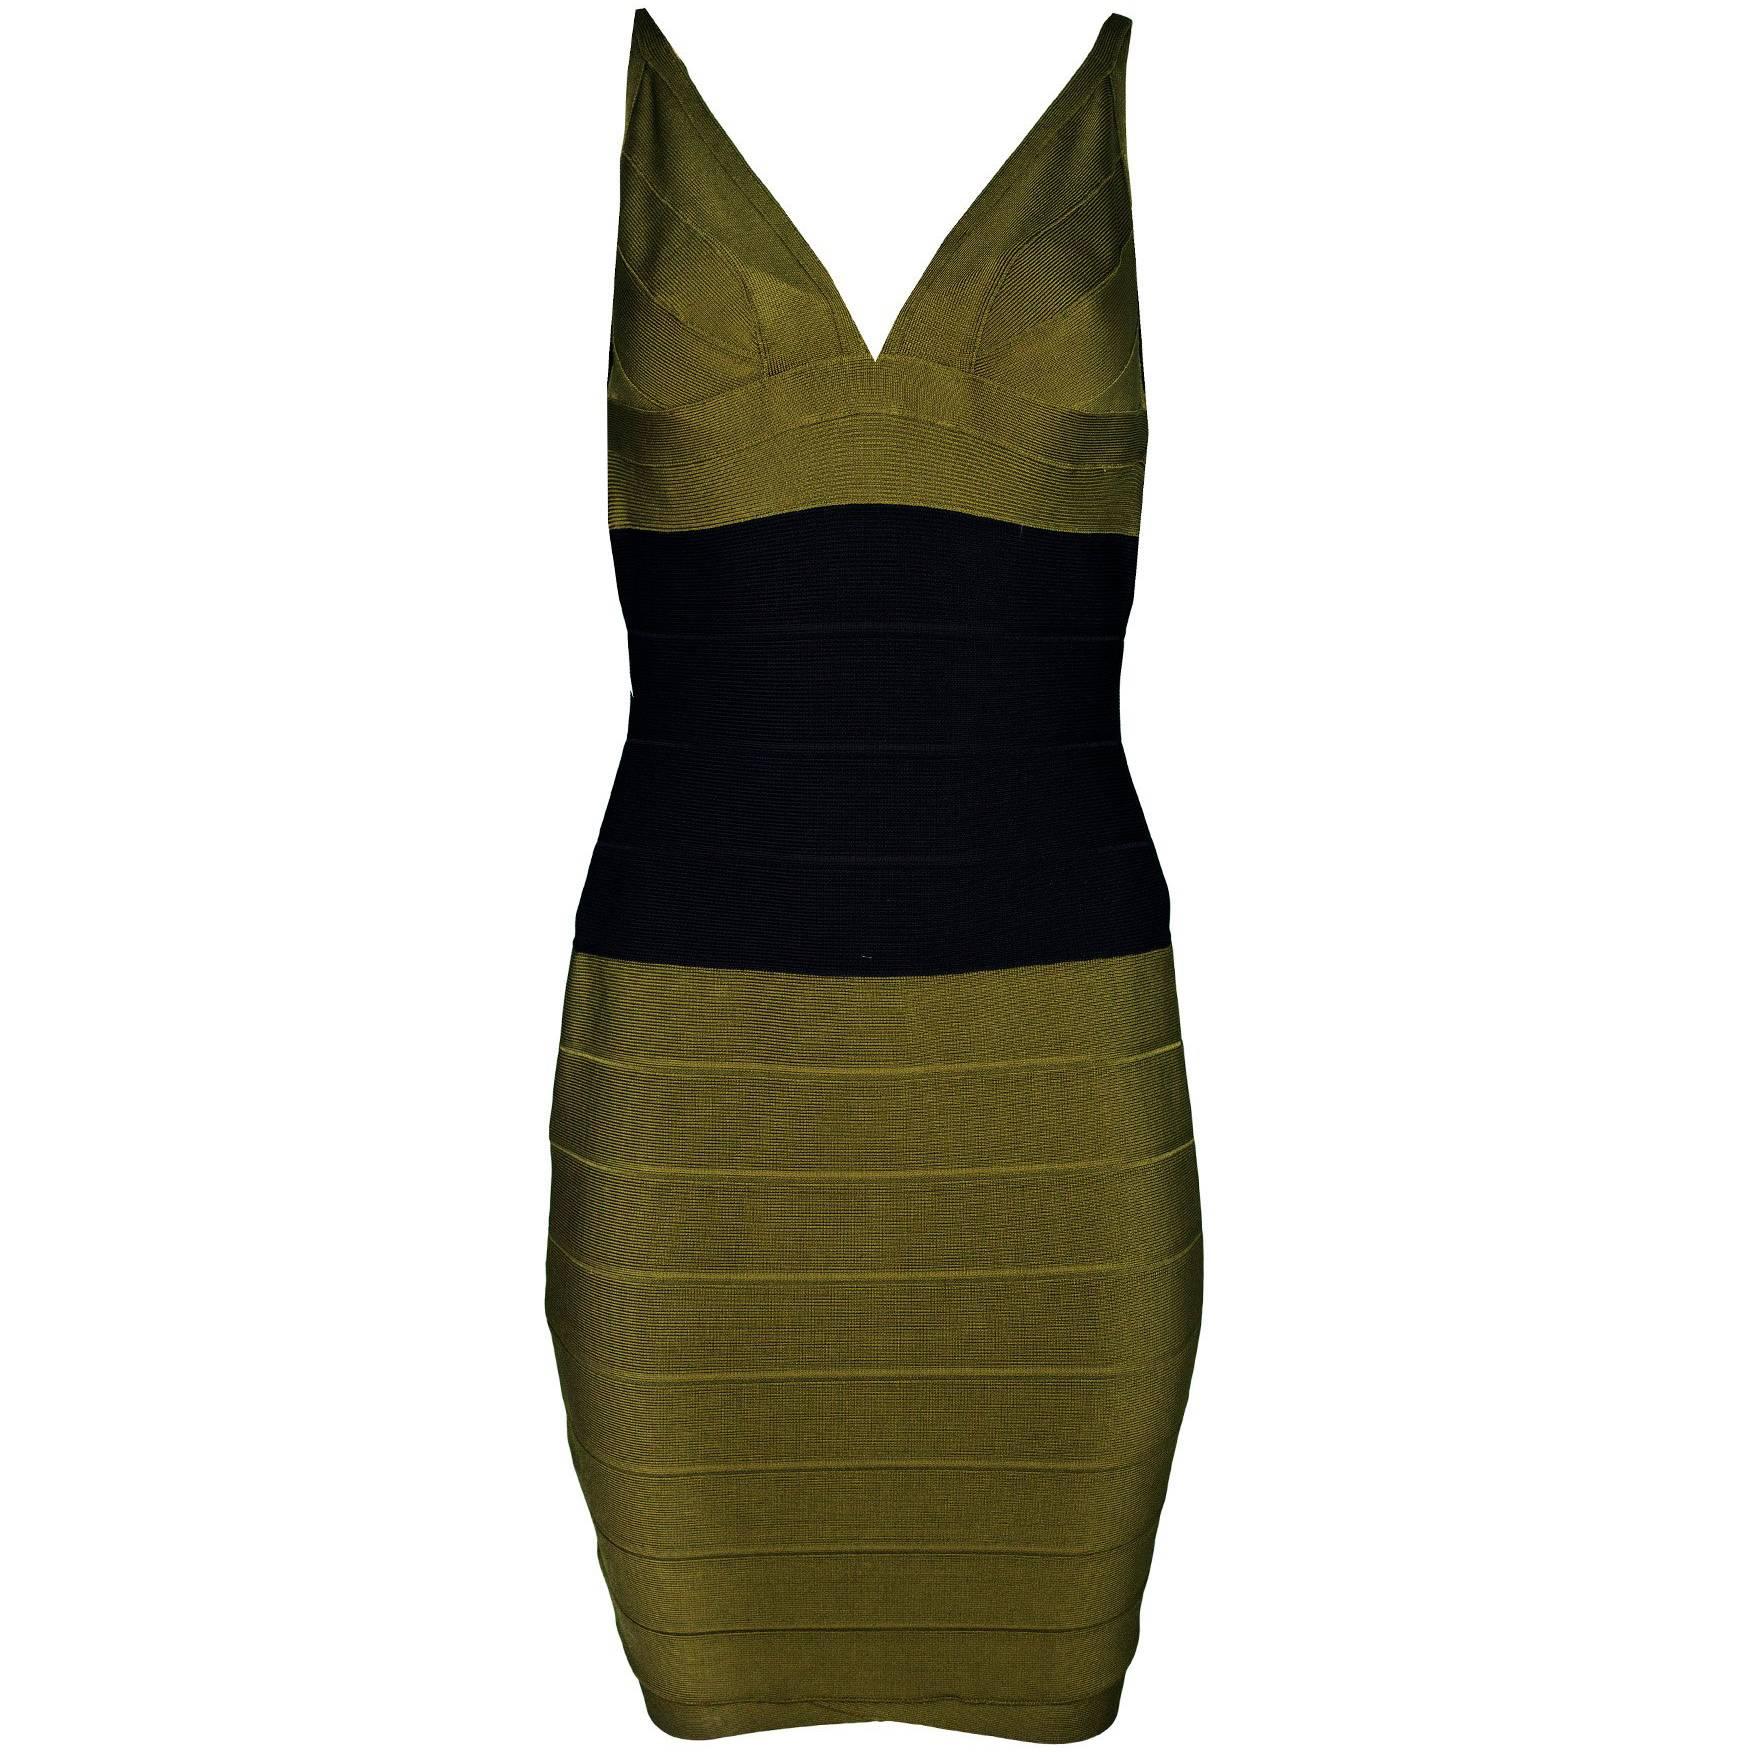 Herve Leger Olive Green & Black Bandage Dress Sz M